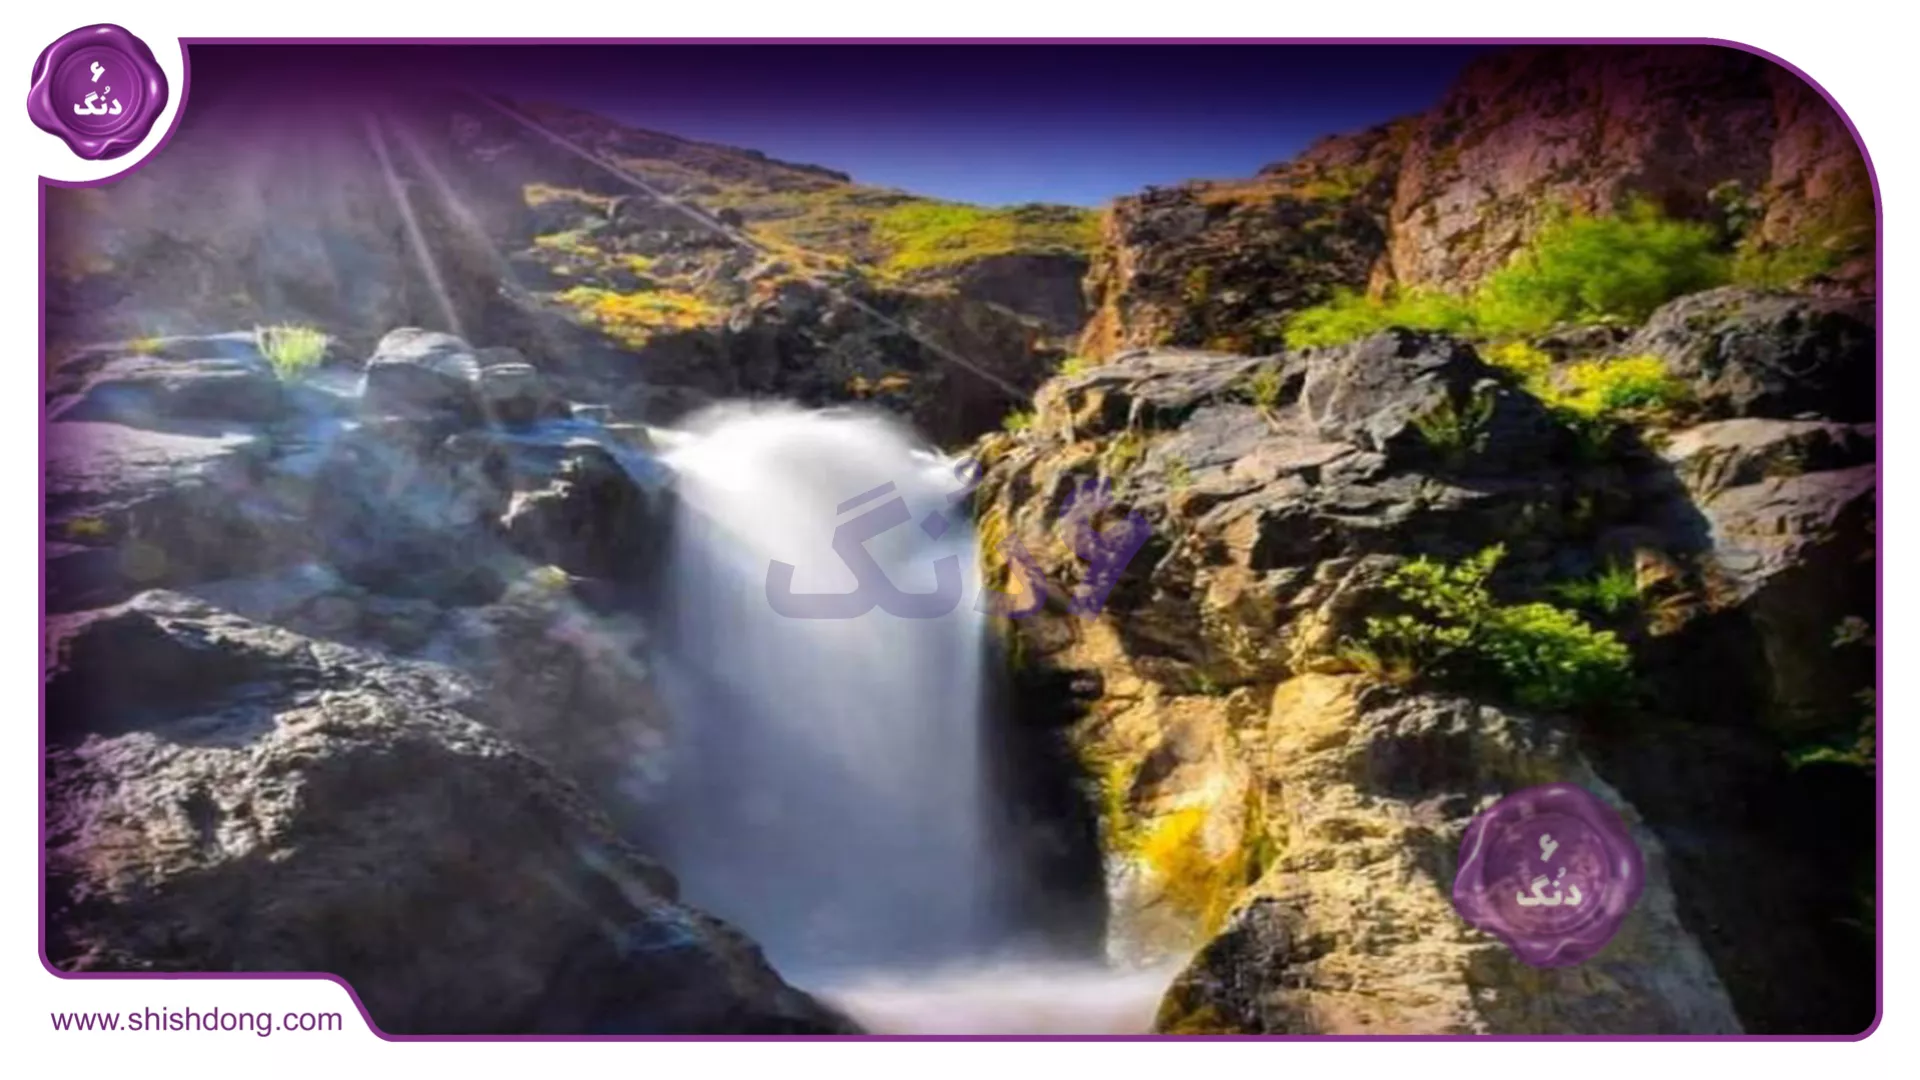 زیبایی بینظیر آبشار ایج در تابستان